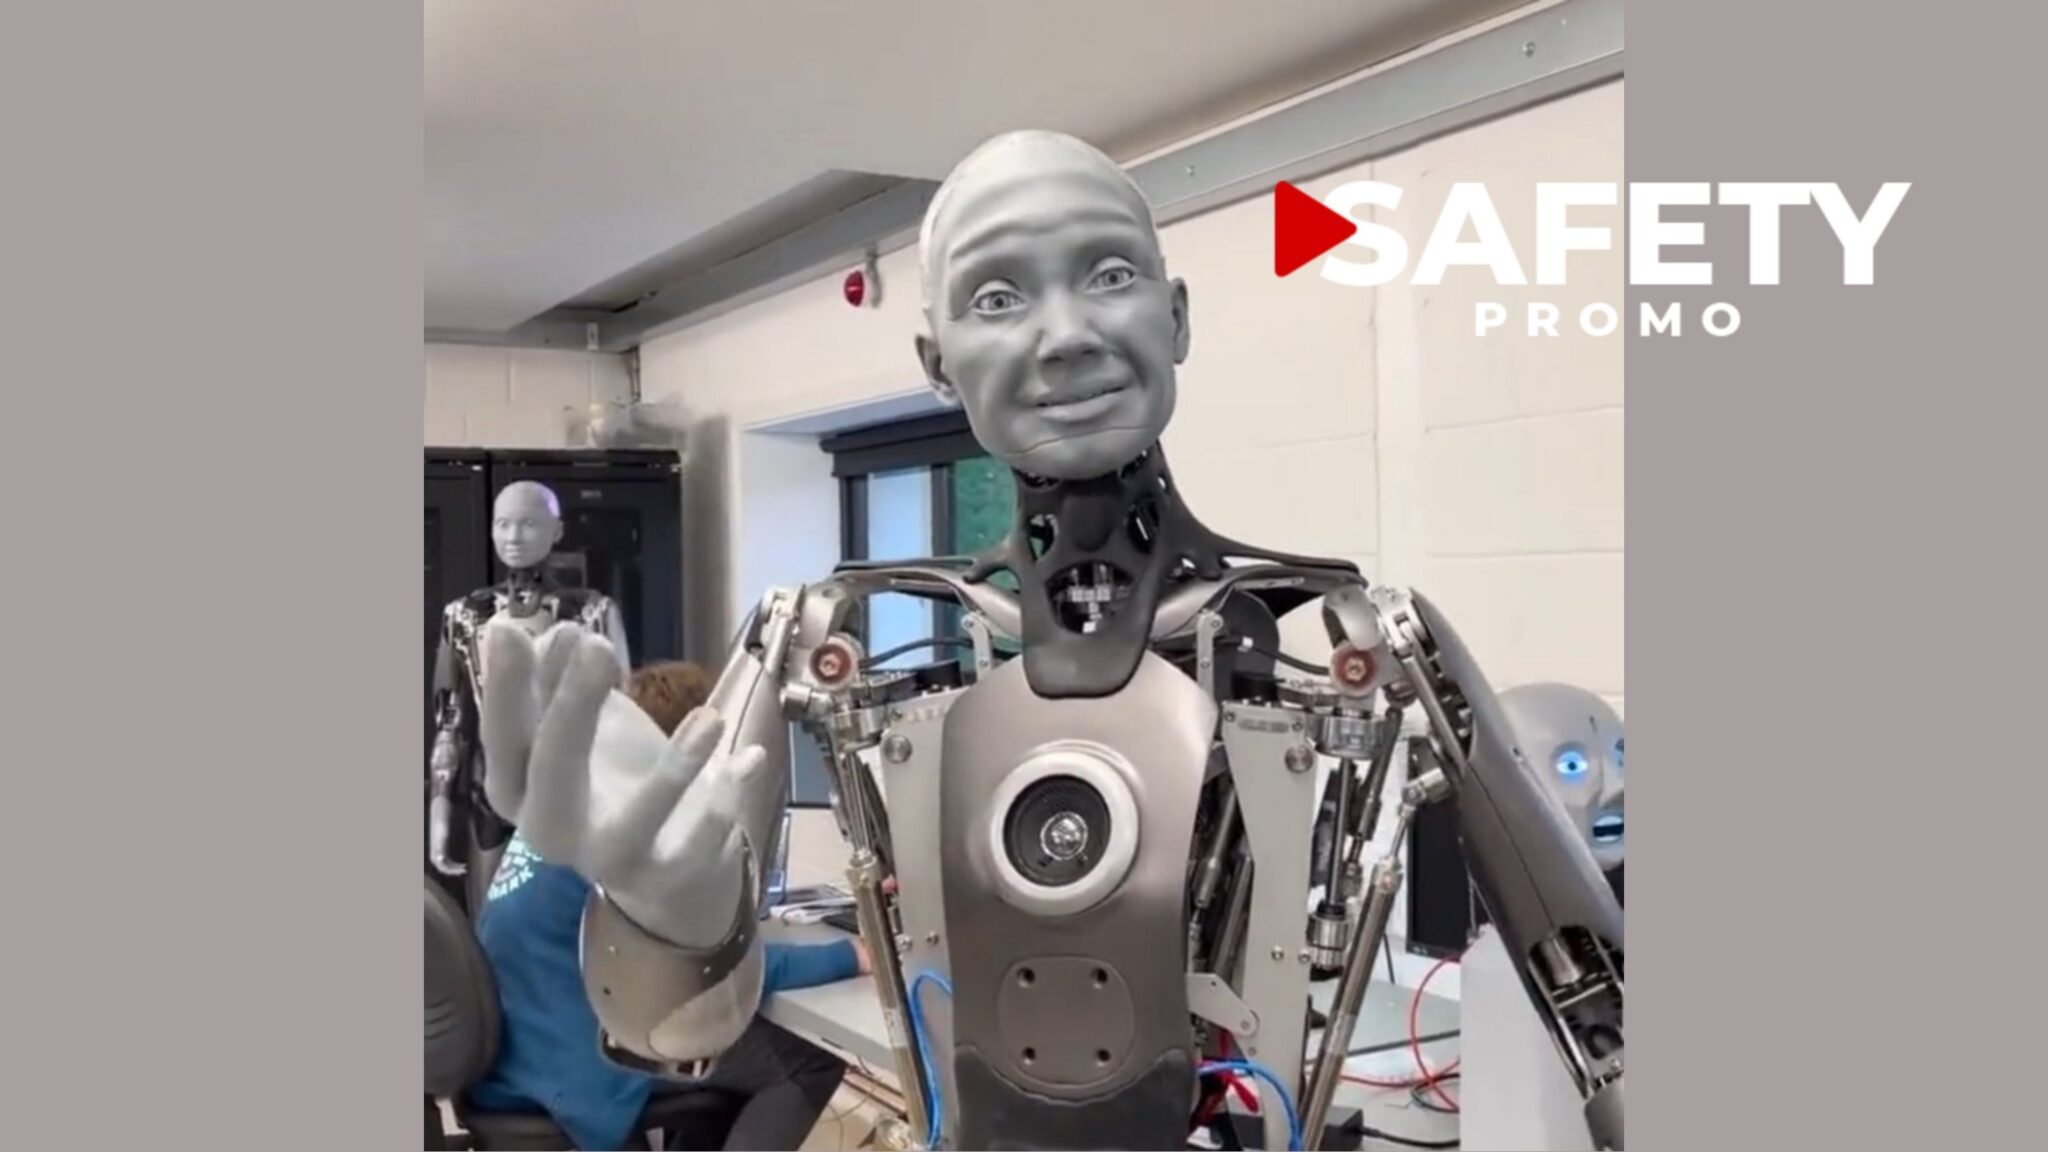 Ce robot humanoïde nous ressemble trait pour trait et c'est inquiétant